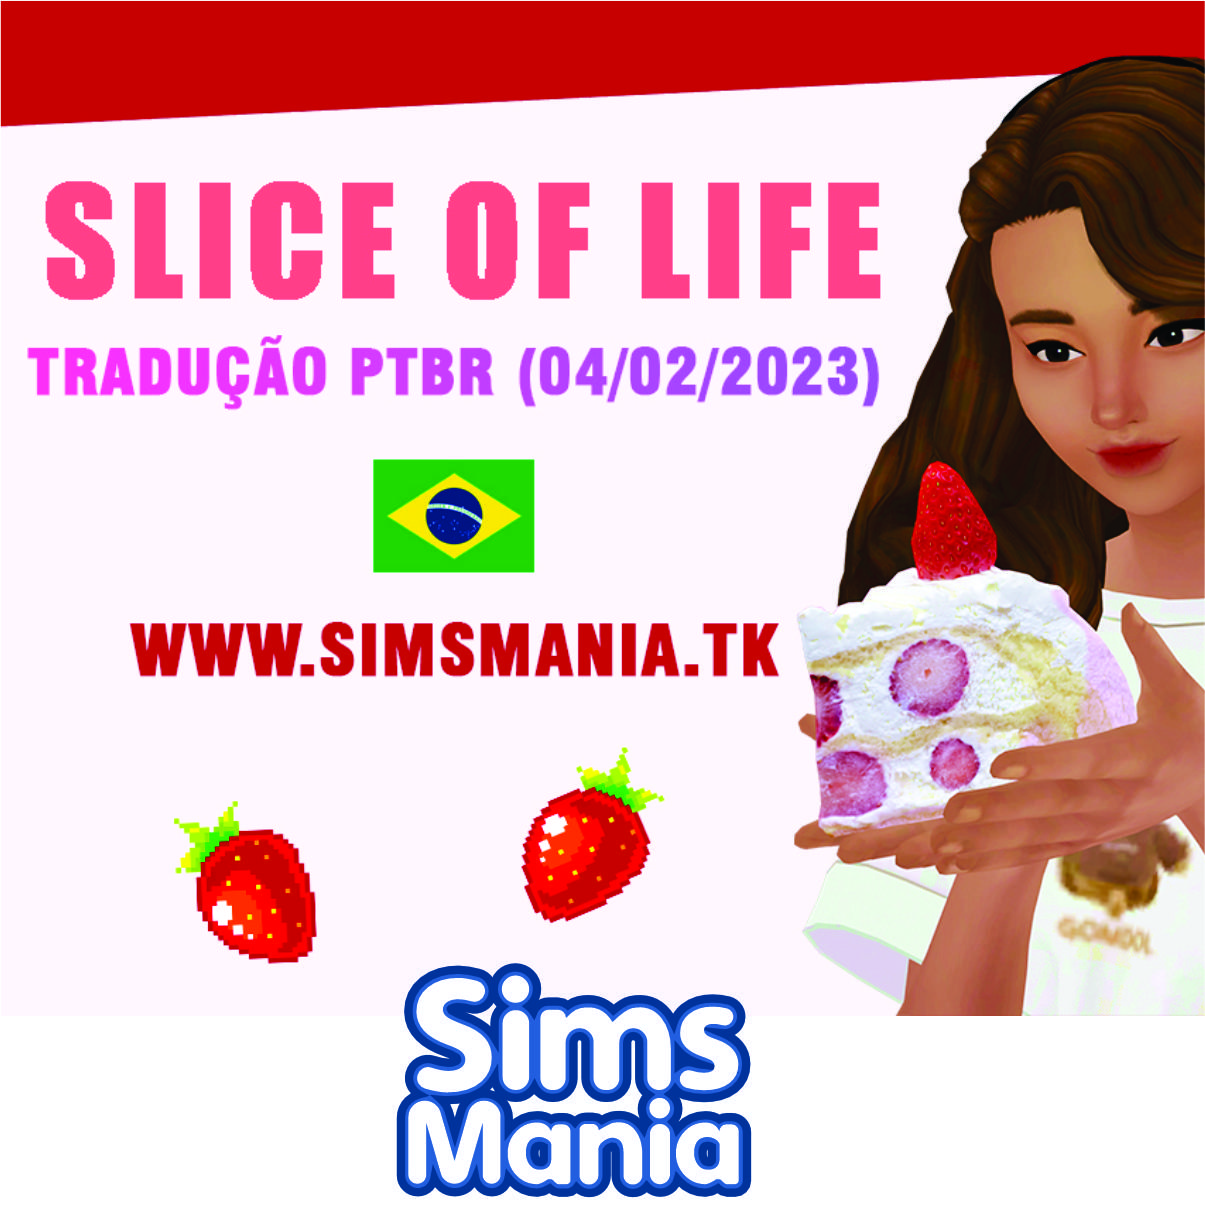 Slice of Life (Tradução PTBR) - The Sims 4 Mods - CurseForge